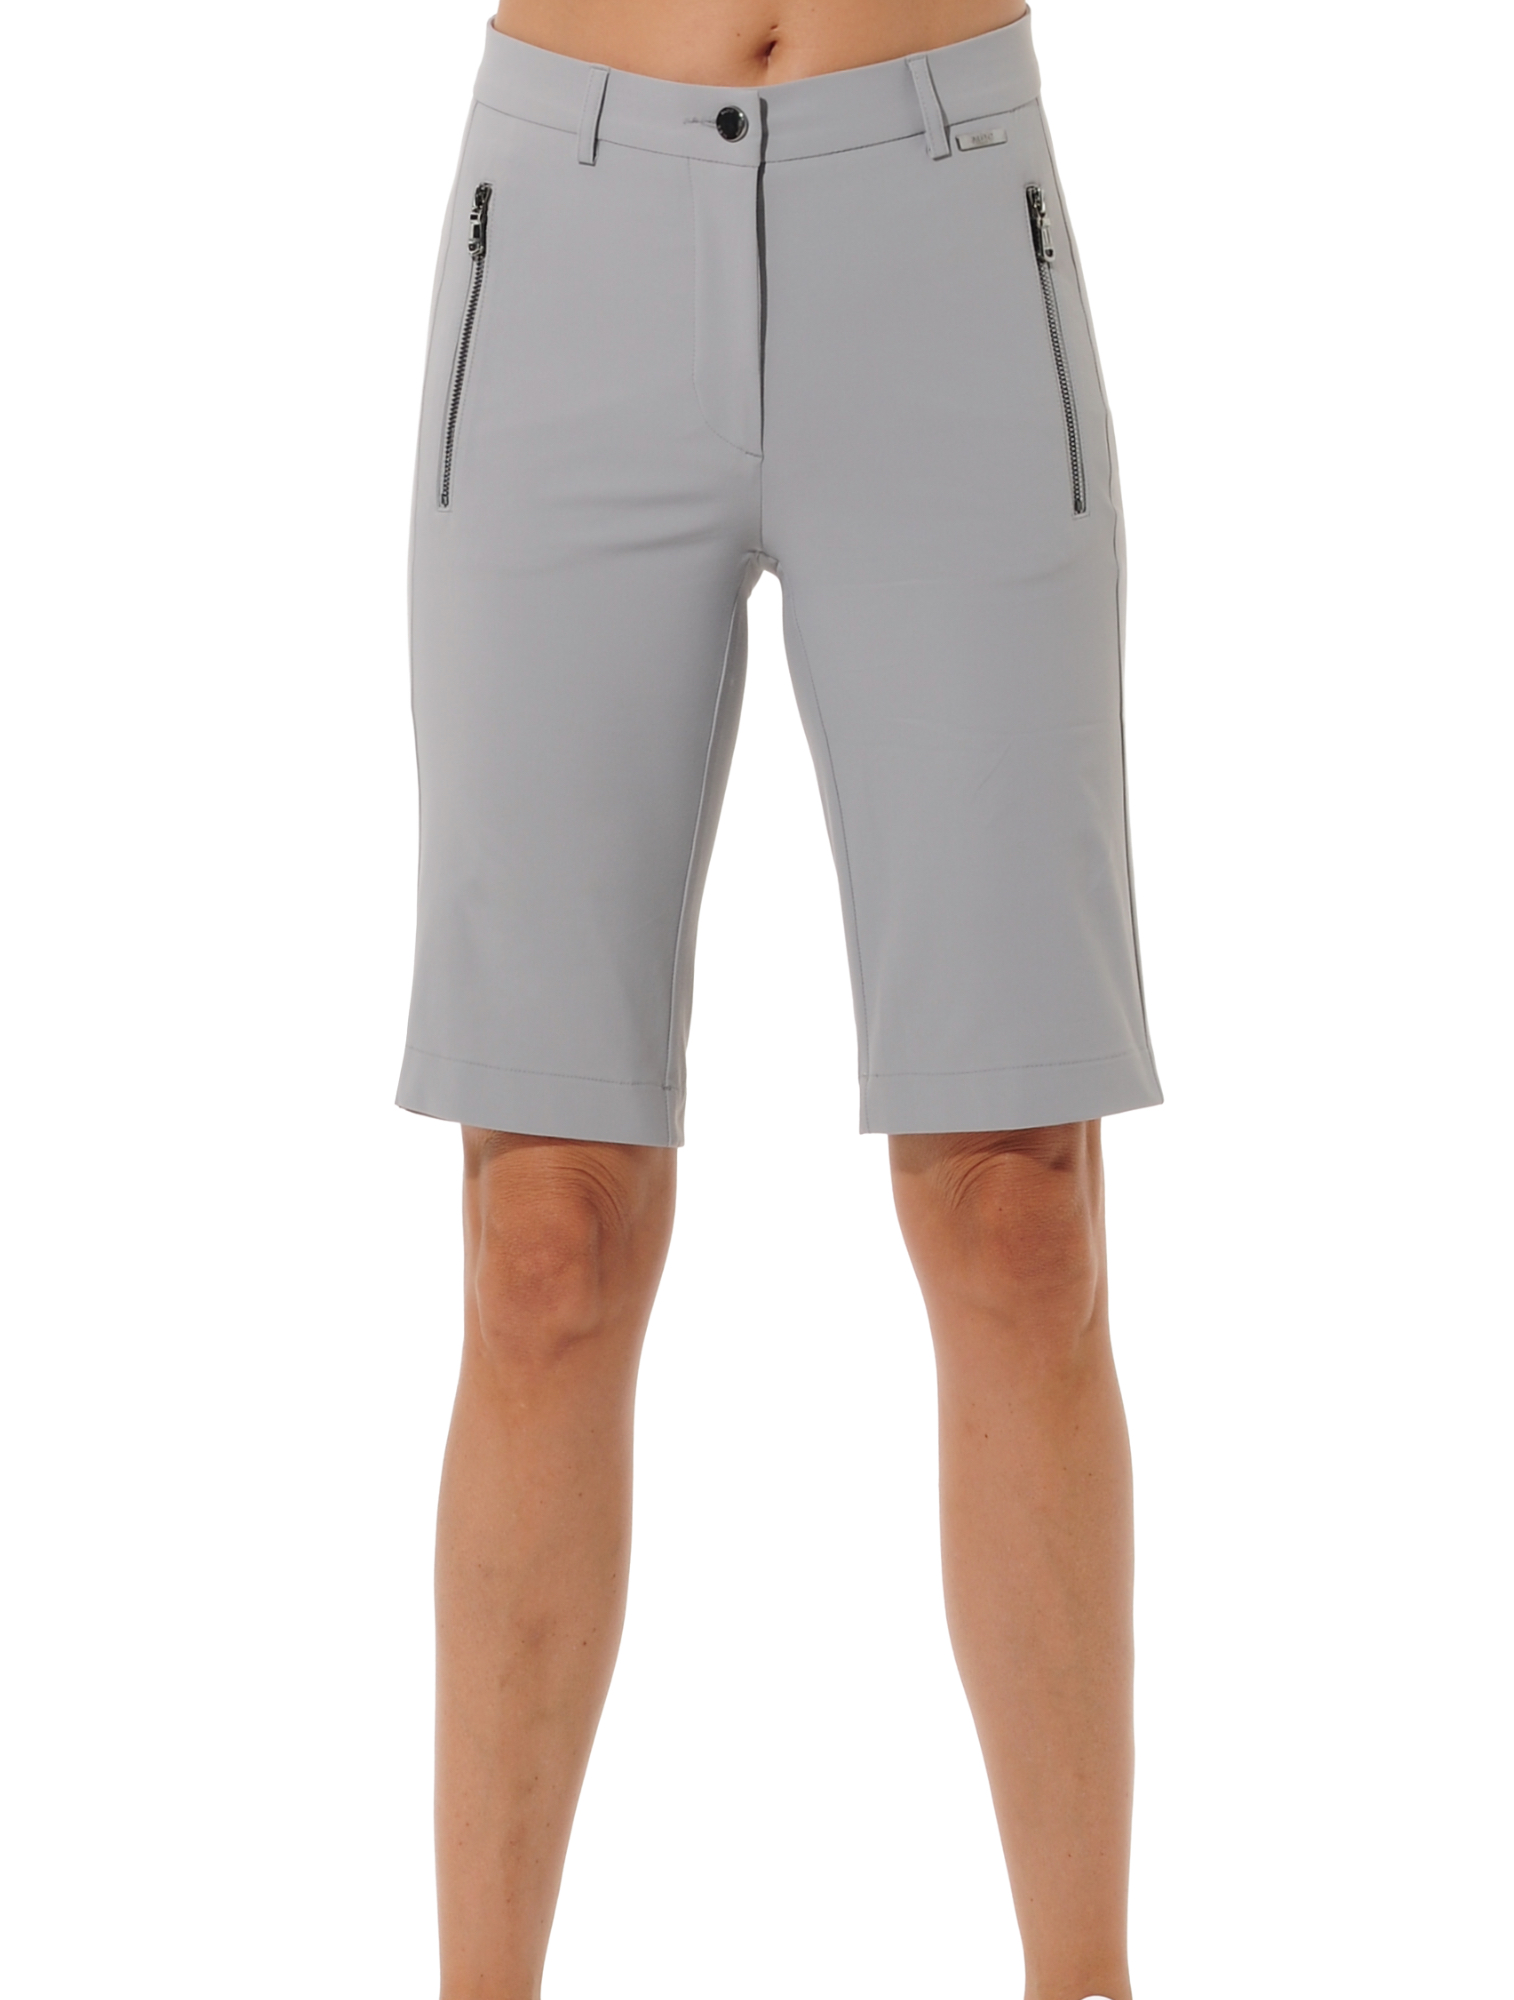 4way stretch golf bermuda shorts grey